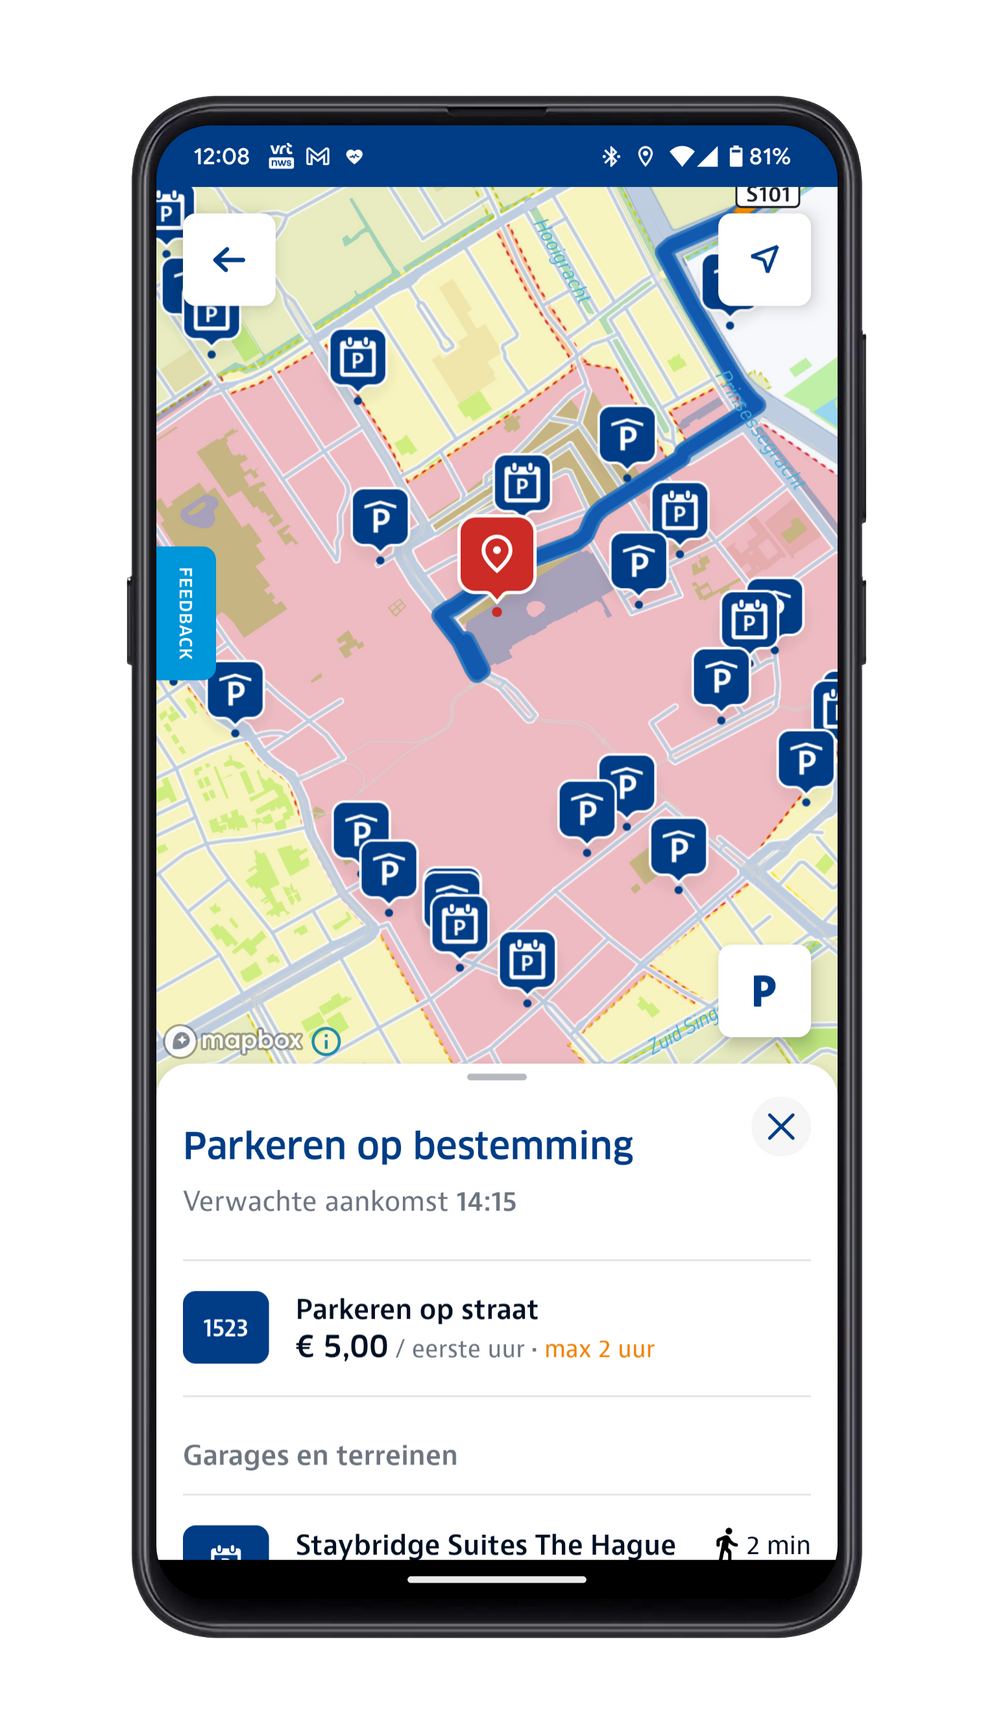 Willen binnen uitbreiden ANWB Onderweg-app toont nu parkeerzones tijdens navigeren